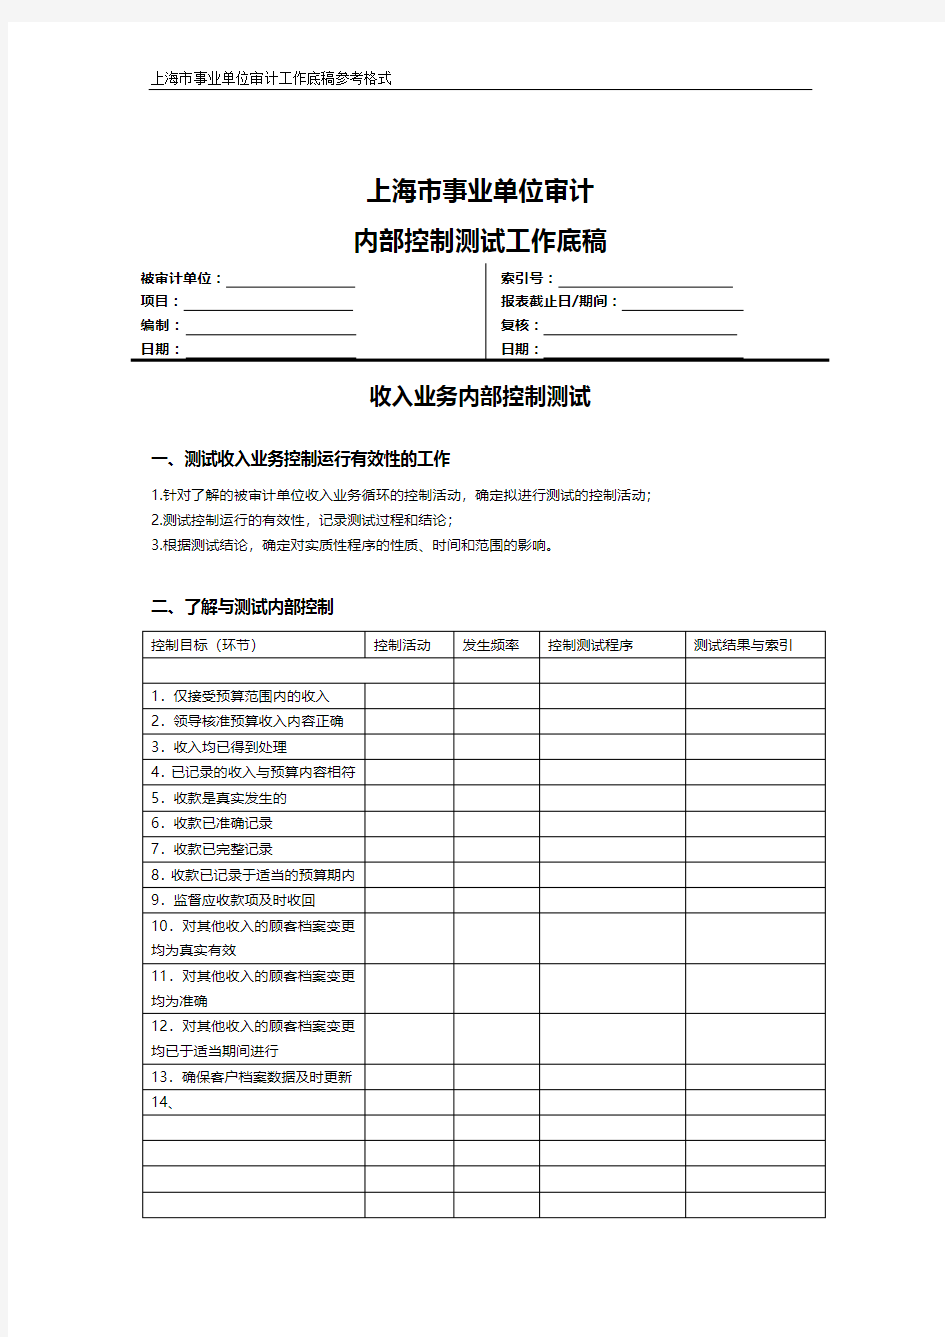 上海市事业单位审计内控测试工作底稿